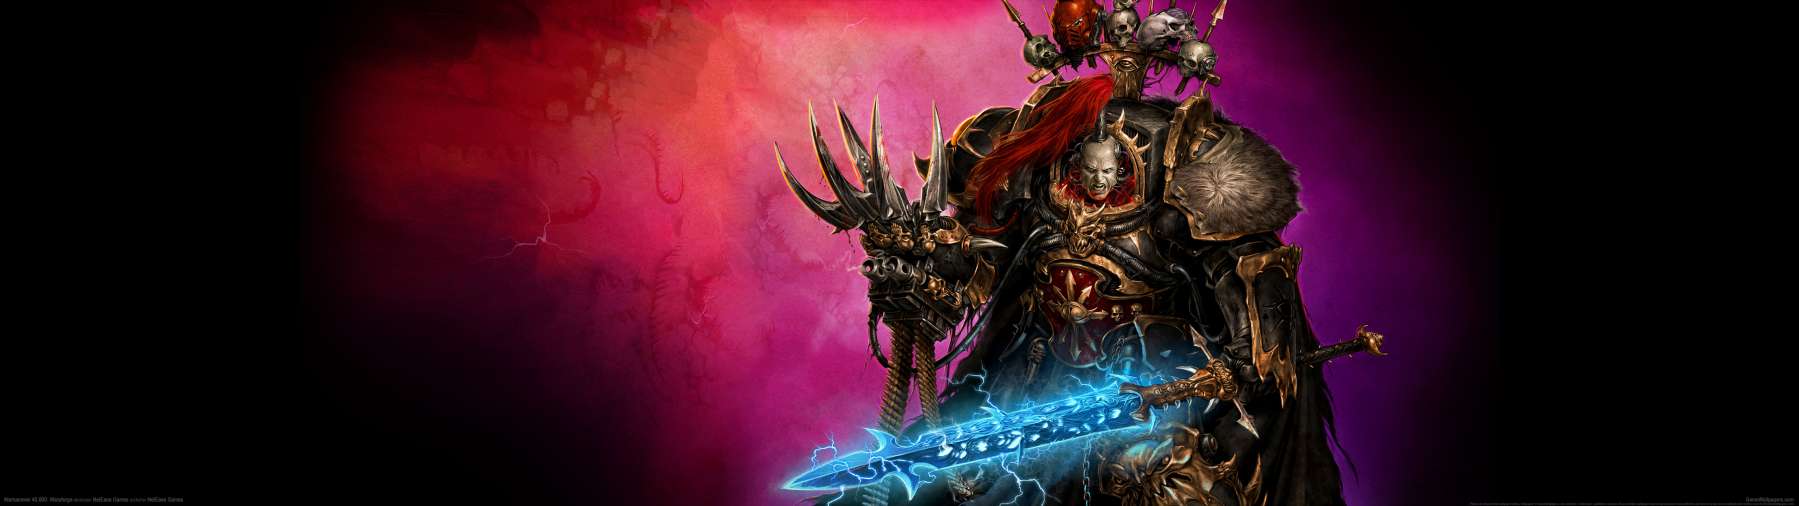 Warhammer 40,000: Warpforge superwide fondo de escritorio 02